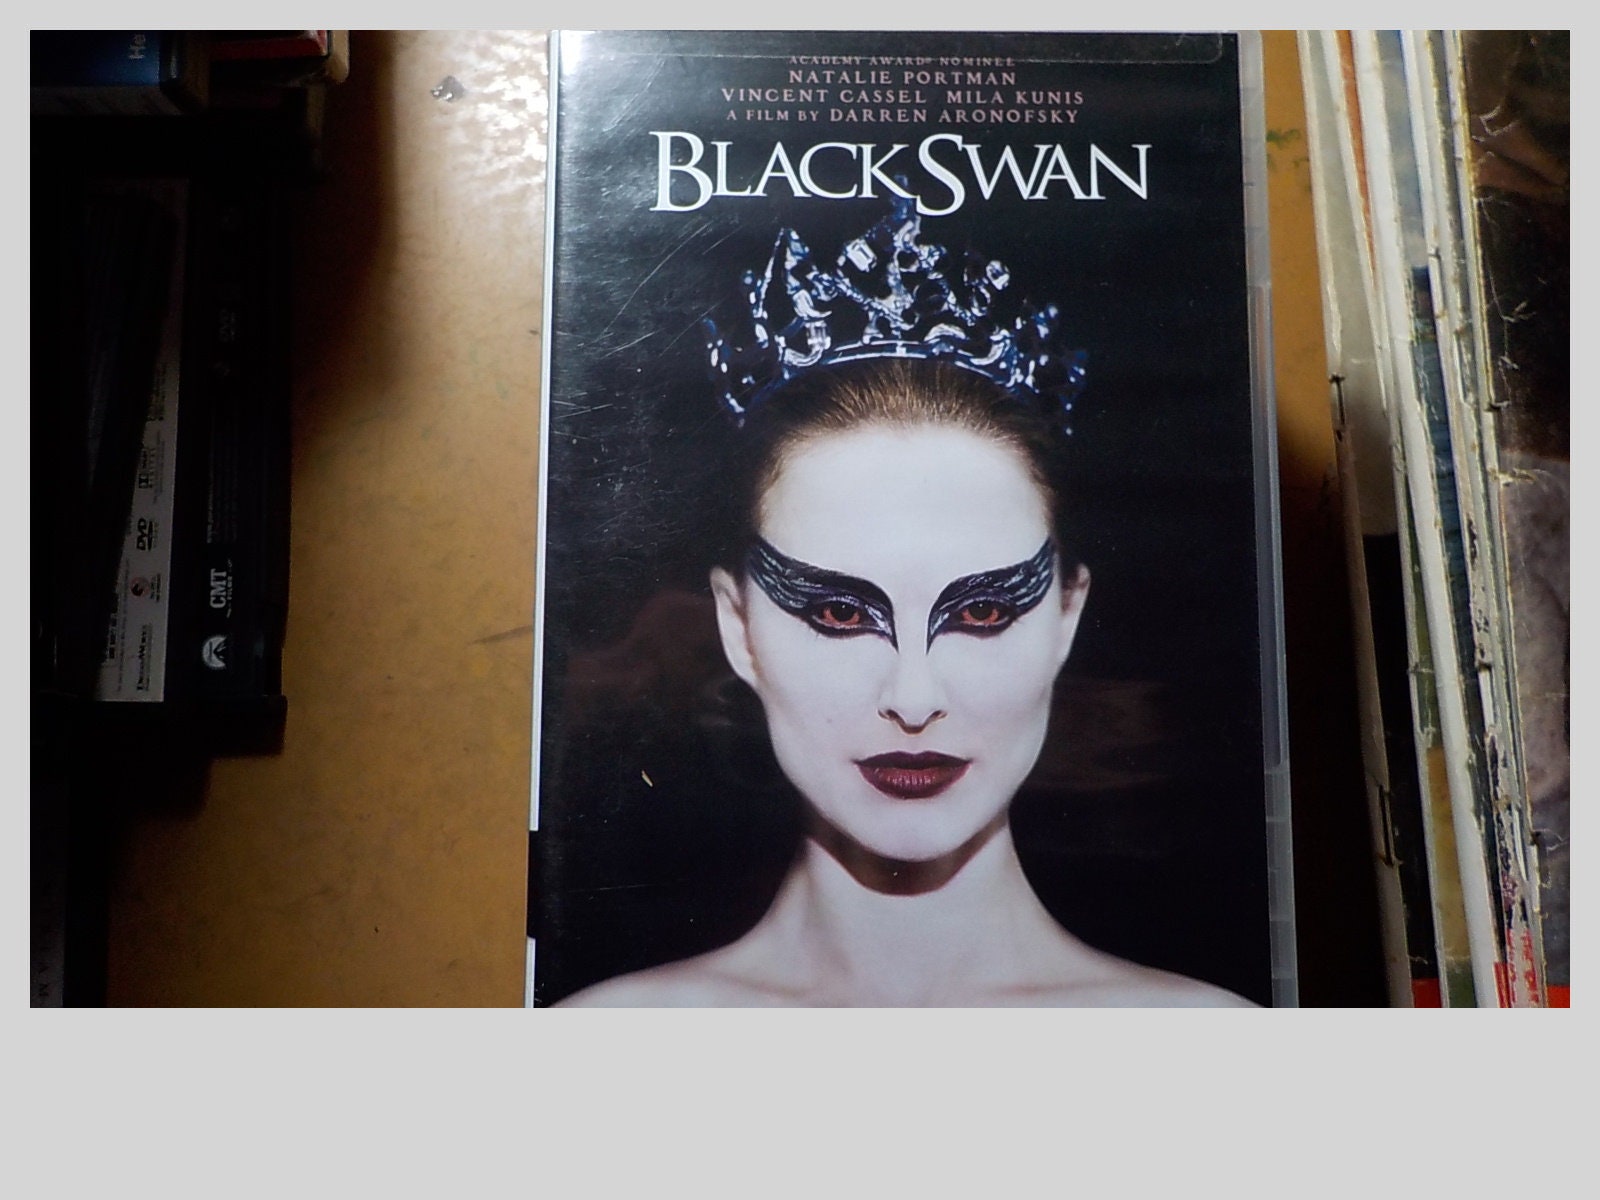 Black Swan Full Movie Free